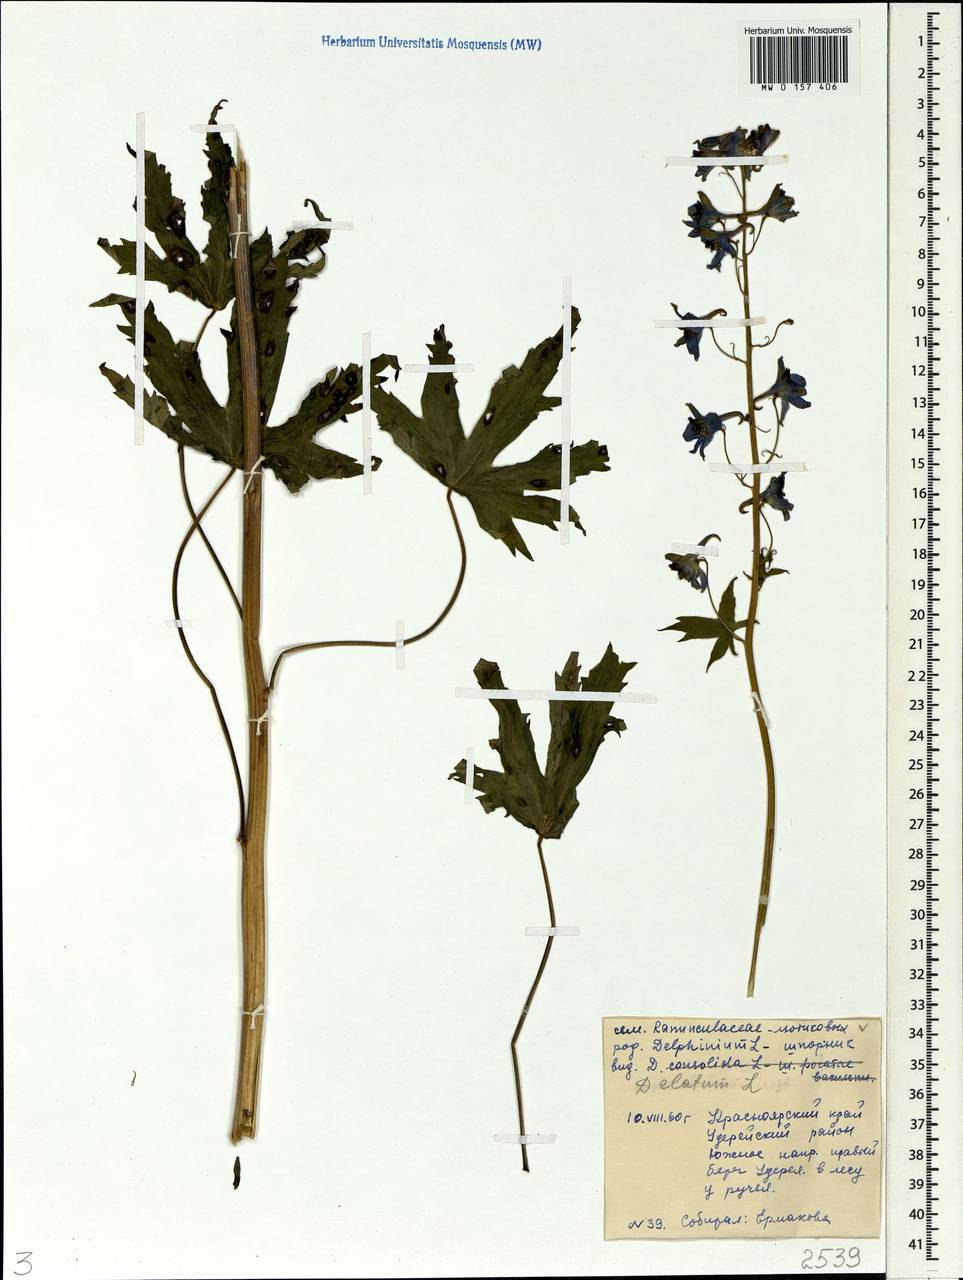 Delphinium elatum L., Siberia, Central Siberia (S3) (Russia)